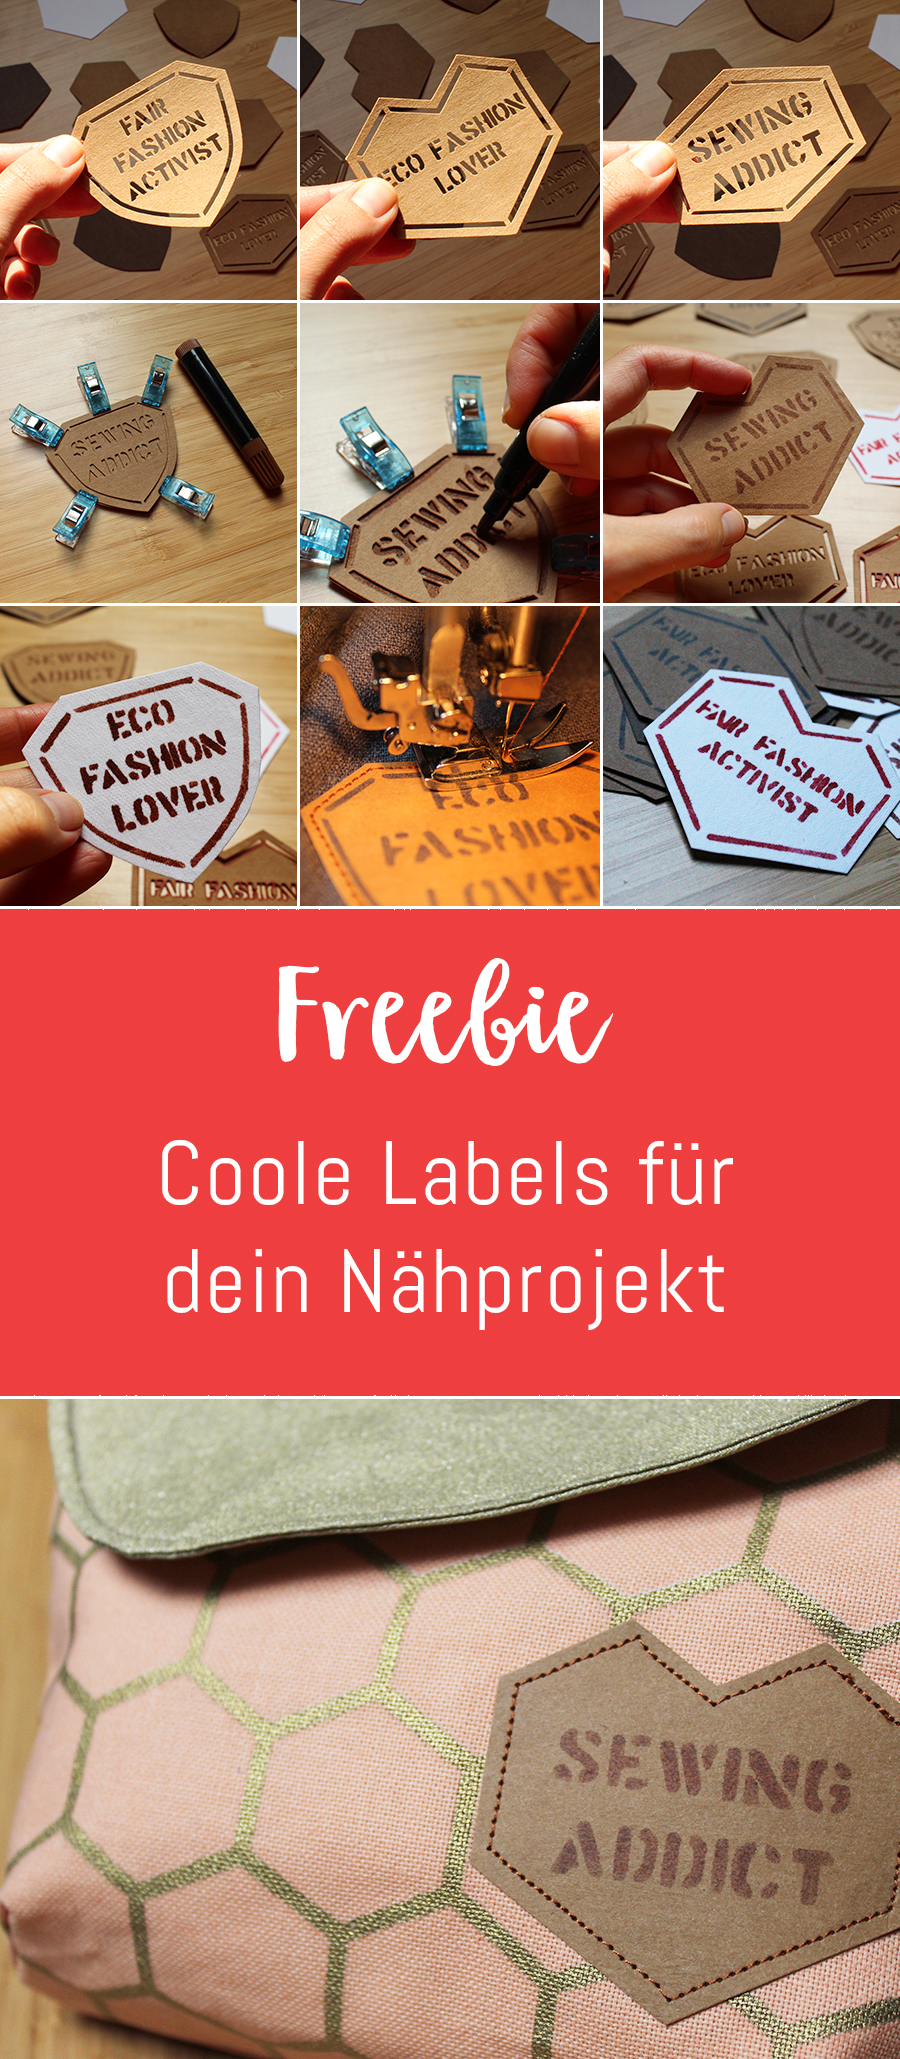 Freebie: Coole Labels für dein Nähprojekt · Fair Fashion & Co.